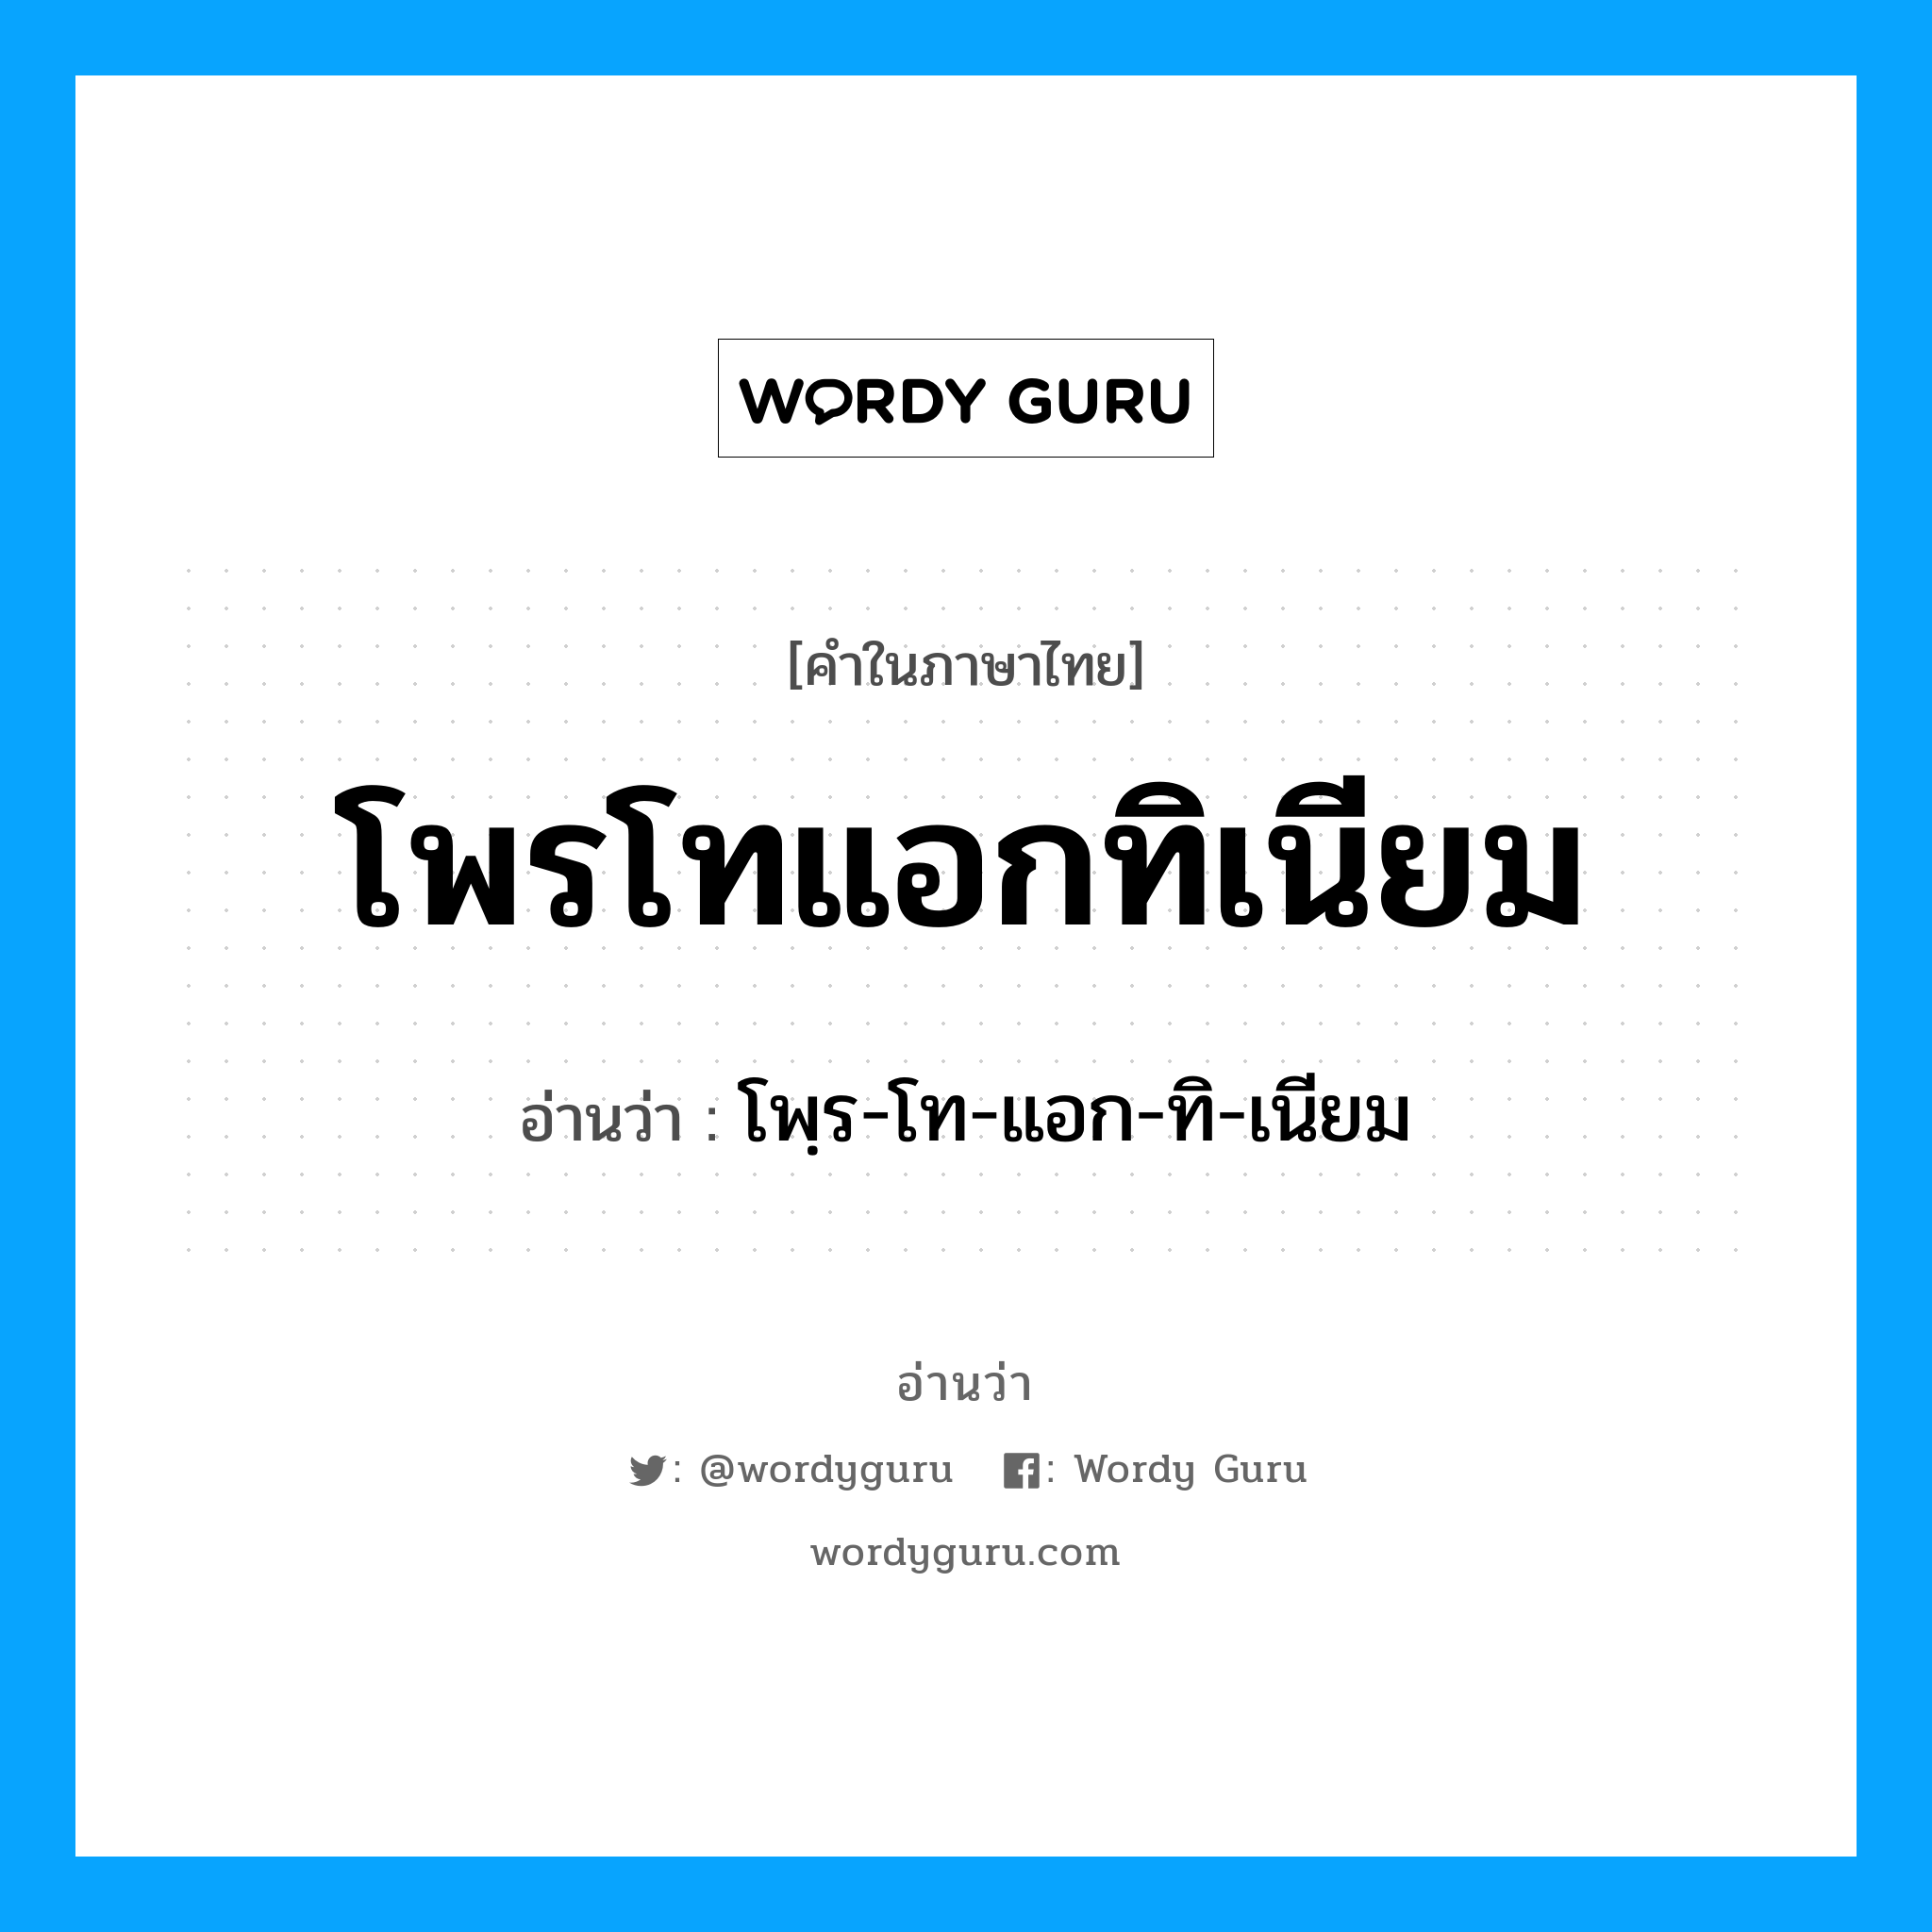 โพฺร-โท-แอก-ทิ-เนียม เป็นคำอ่านของคำไหน?, คำในภาษาไทย โพฺร-โท-แอก-ทิ-เนียม อ่านว่า โพรโทแอกทิเนียม